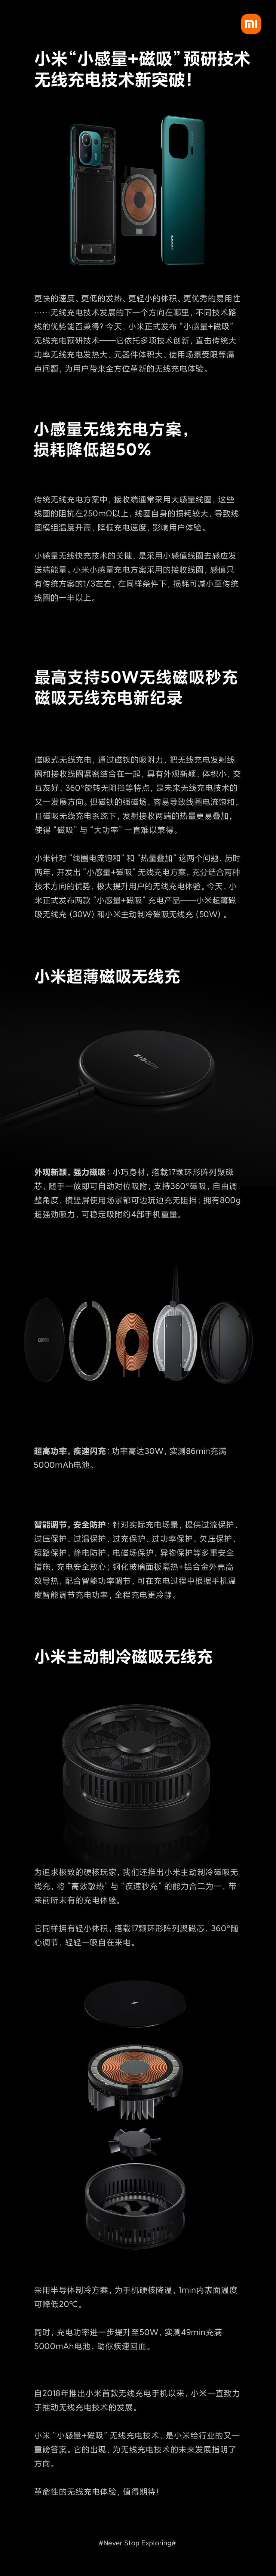 Xiaomi présente une infographie pour sa nouvelle technologie de recharge sans fil. (Source : Xiaomi via Weibo)